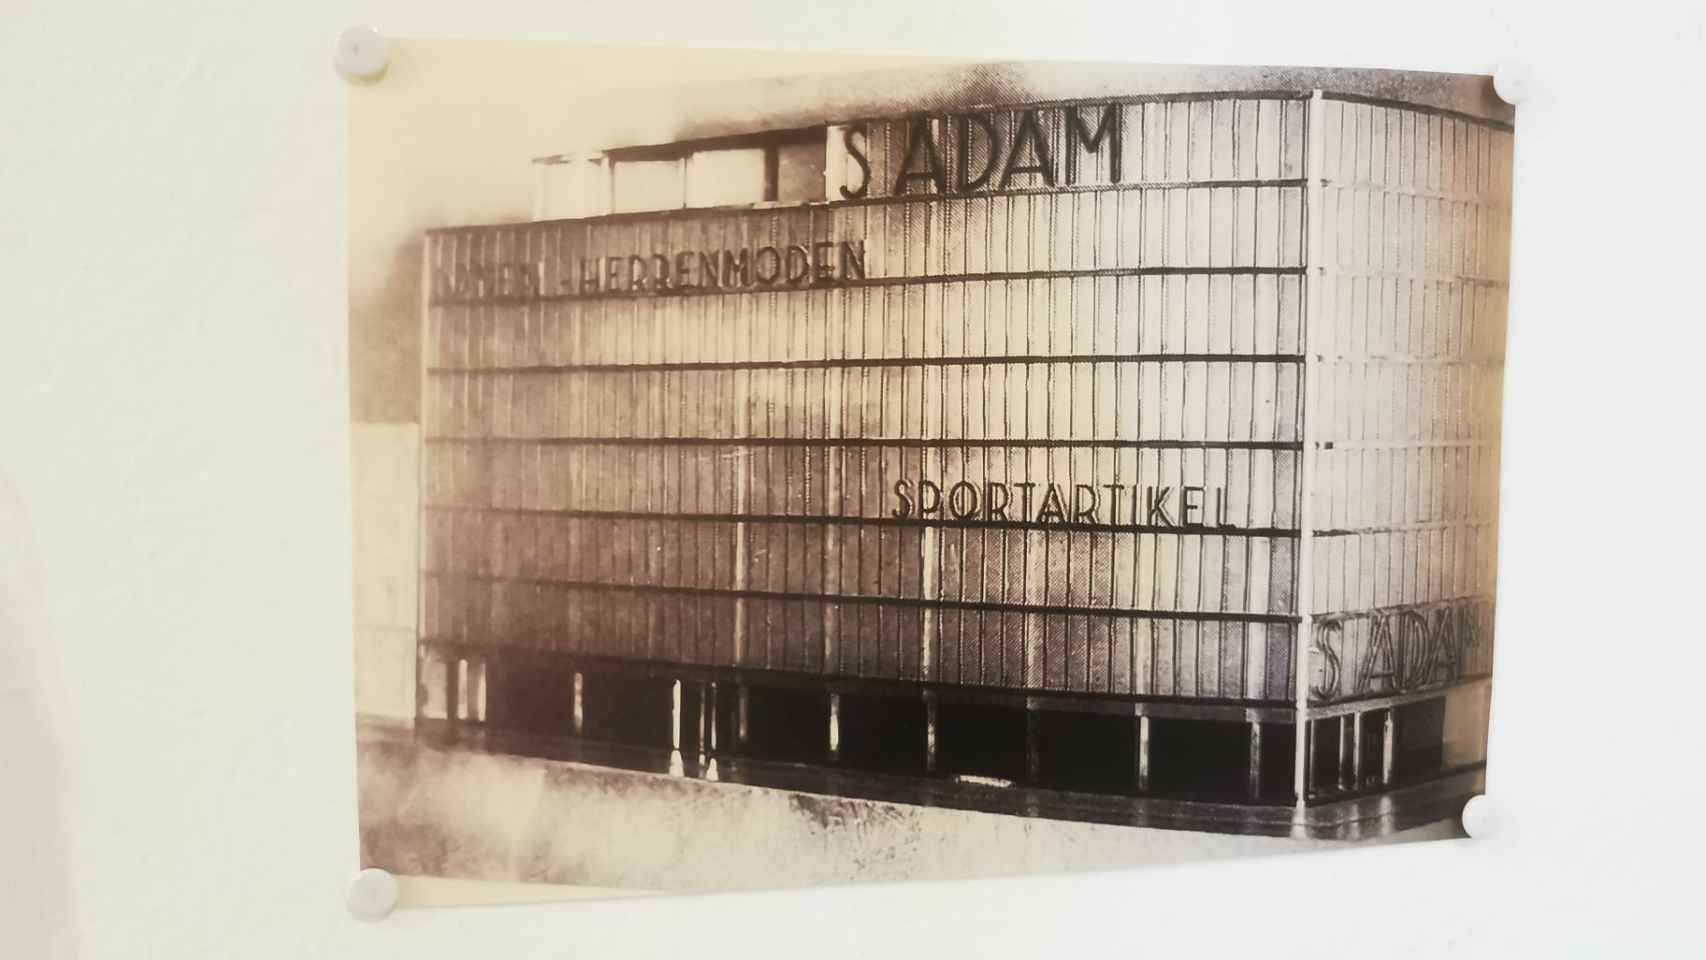 El edificio que debía albergar la tienda S. ADAM